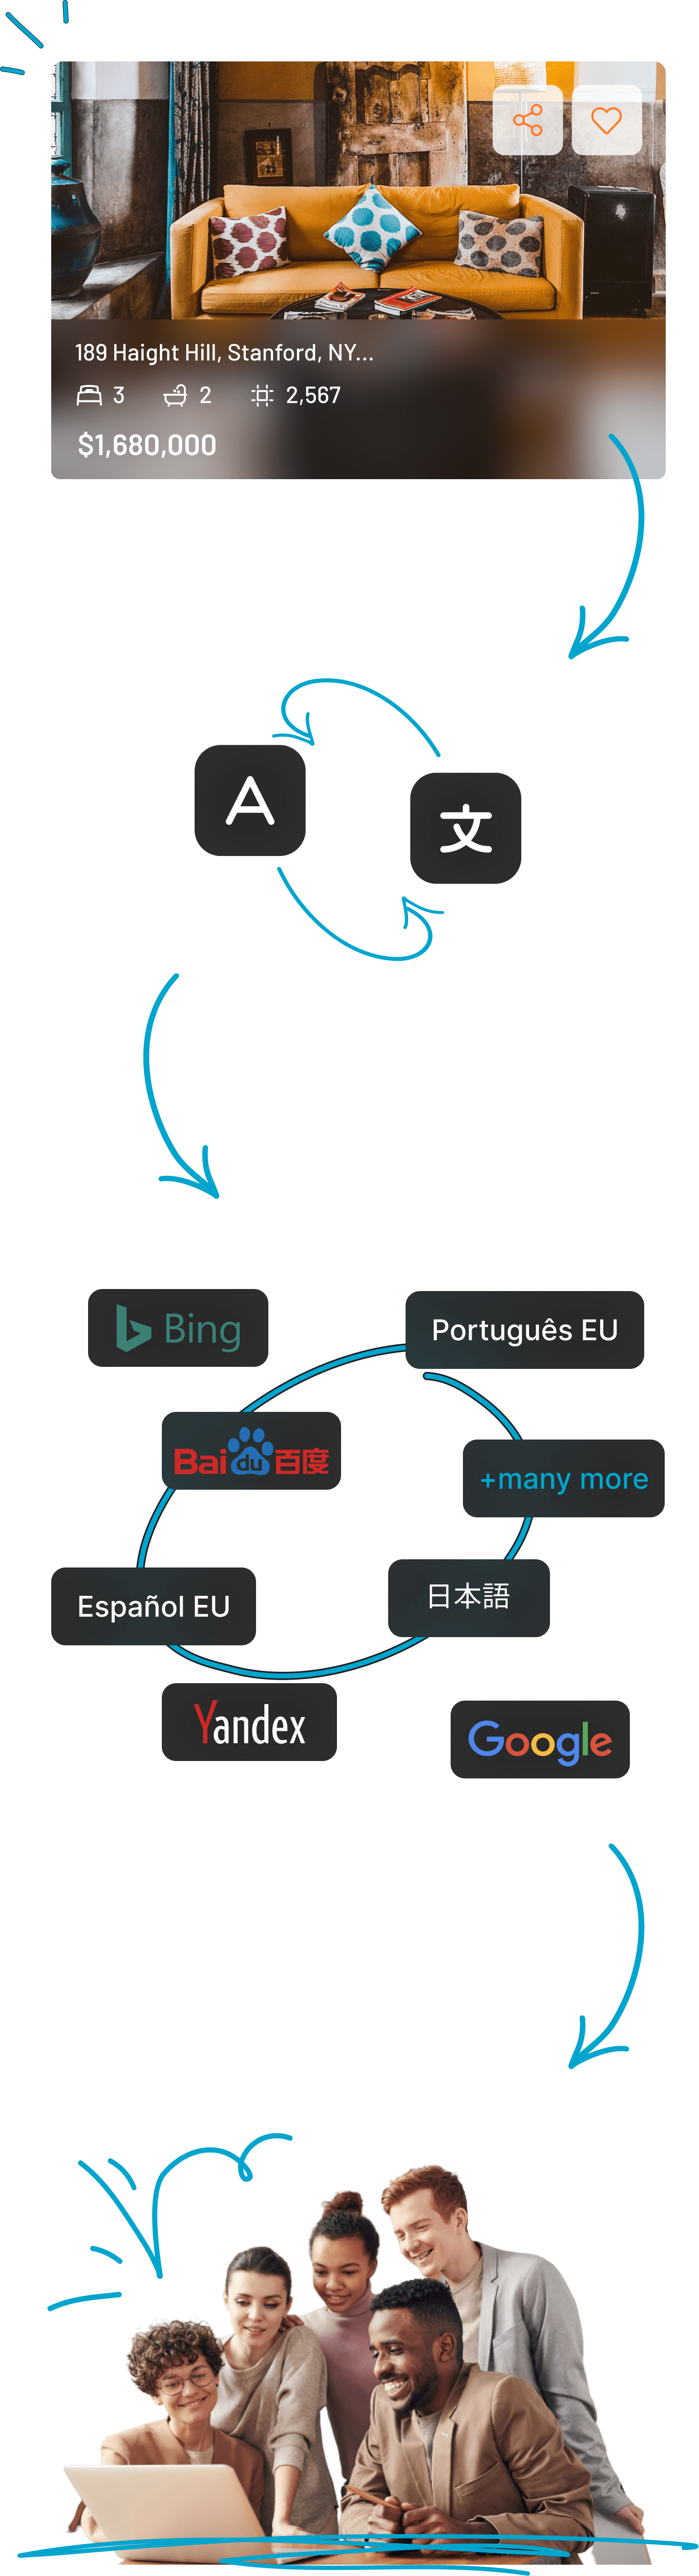 API translation process